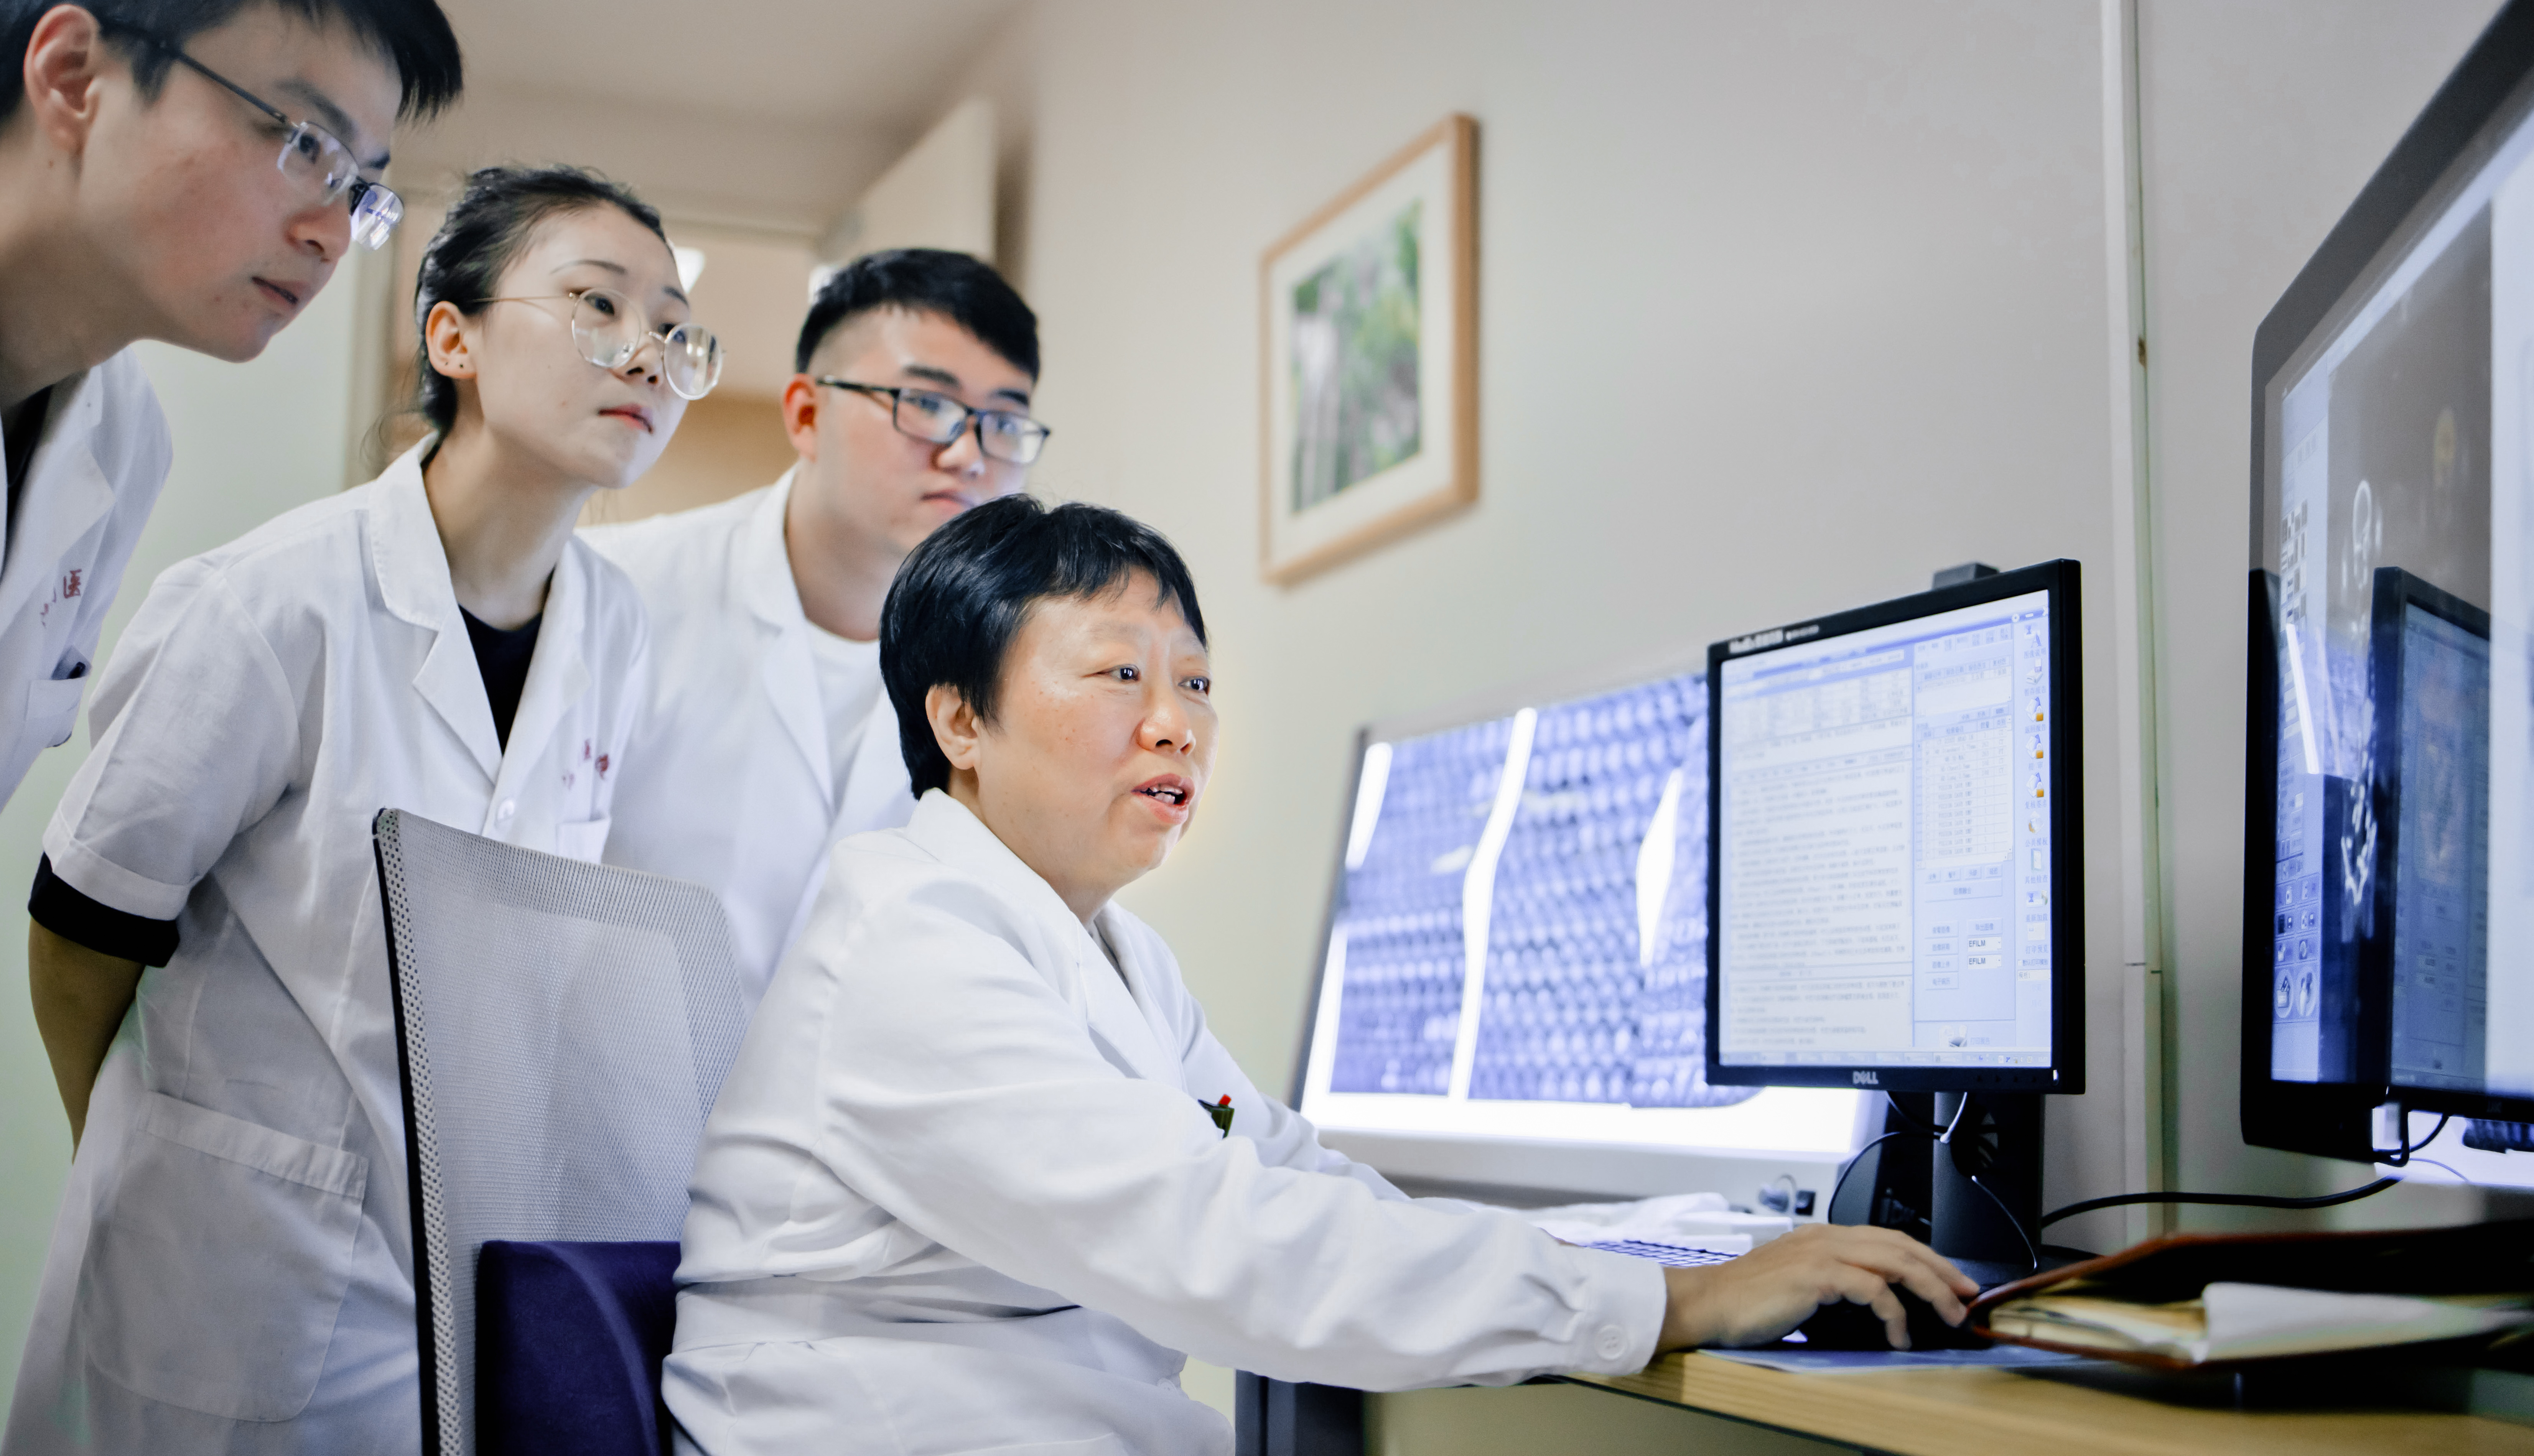 海南省肿瘤医院多模态影像技术 让肿瘤「元凶」现形